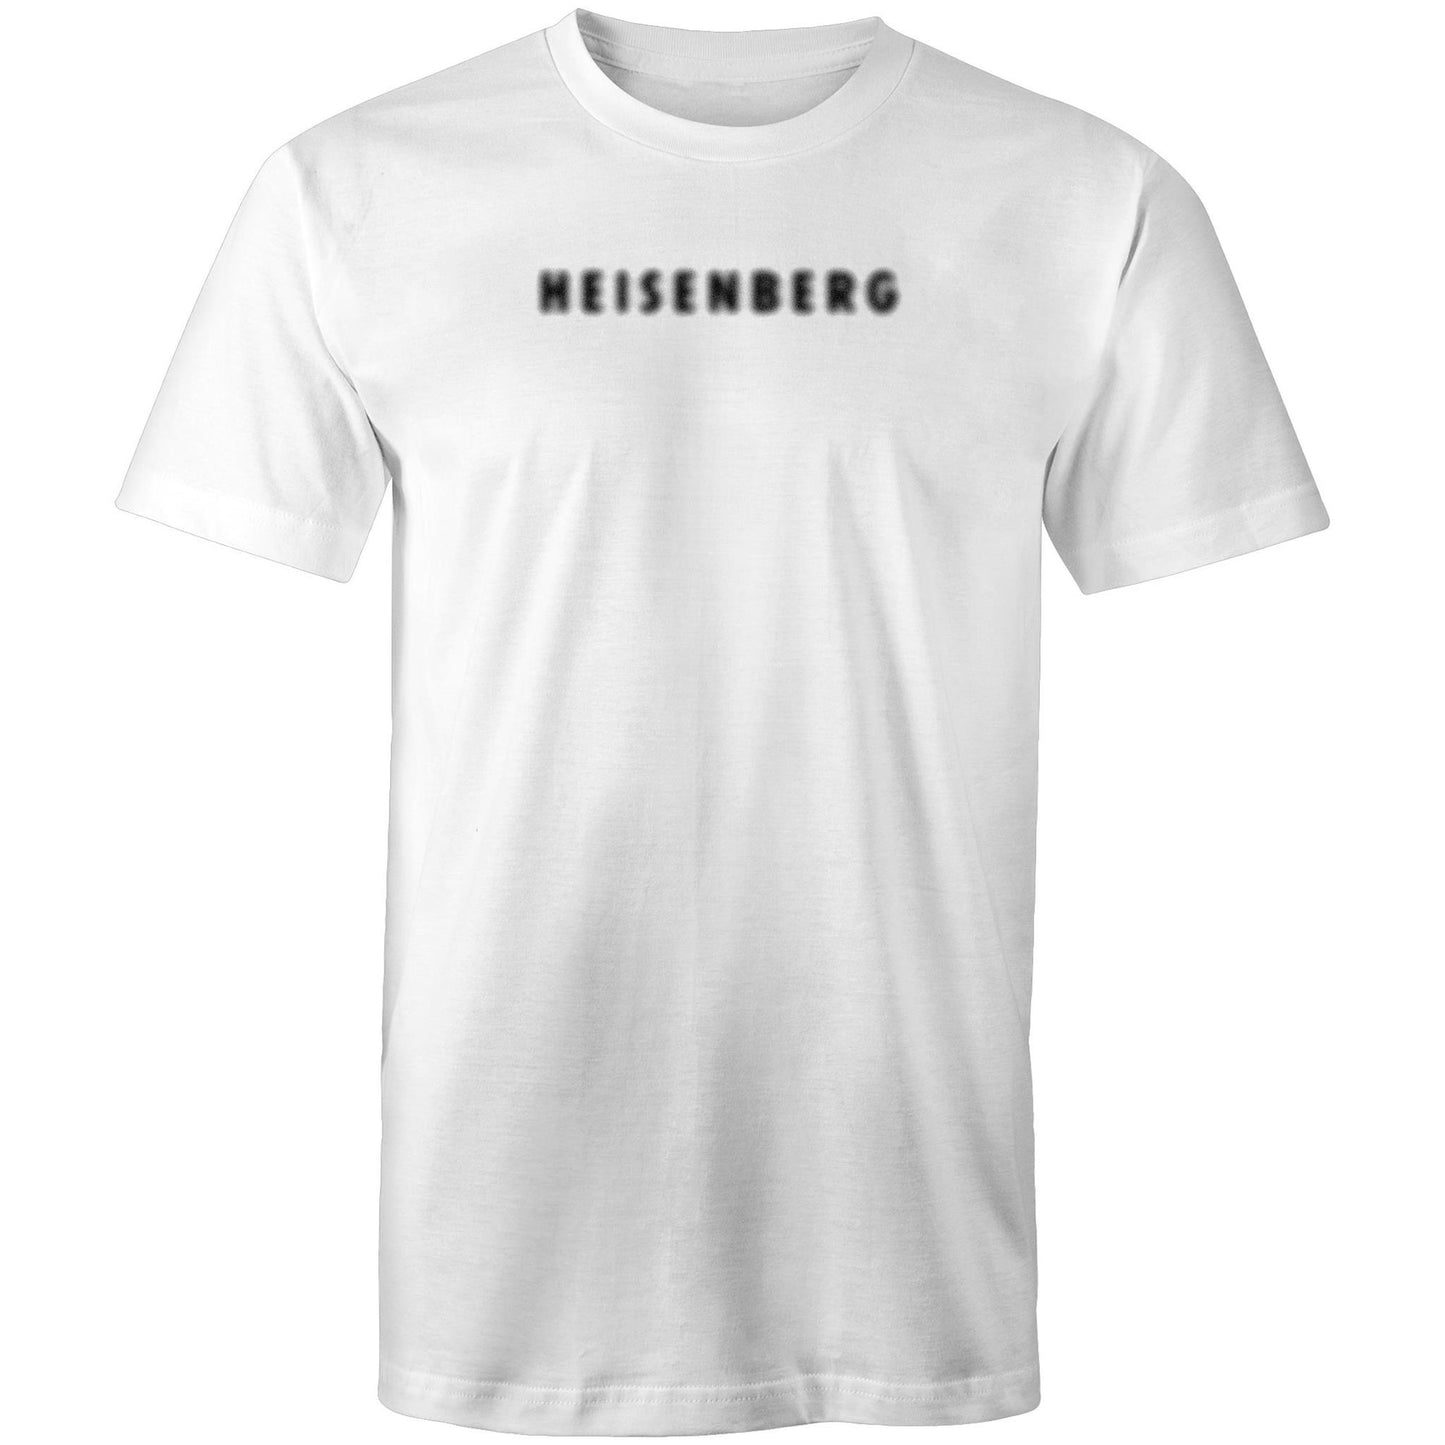 Heisenberg T Shirts for Men (Unisex)